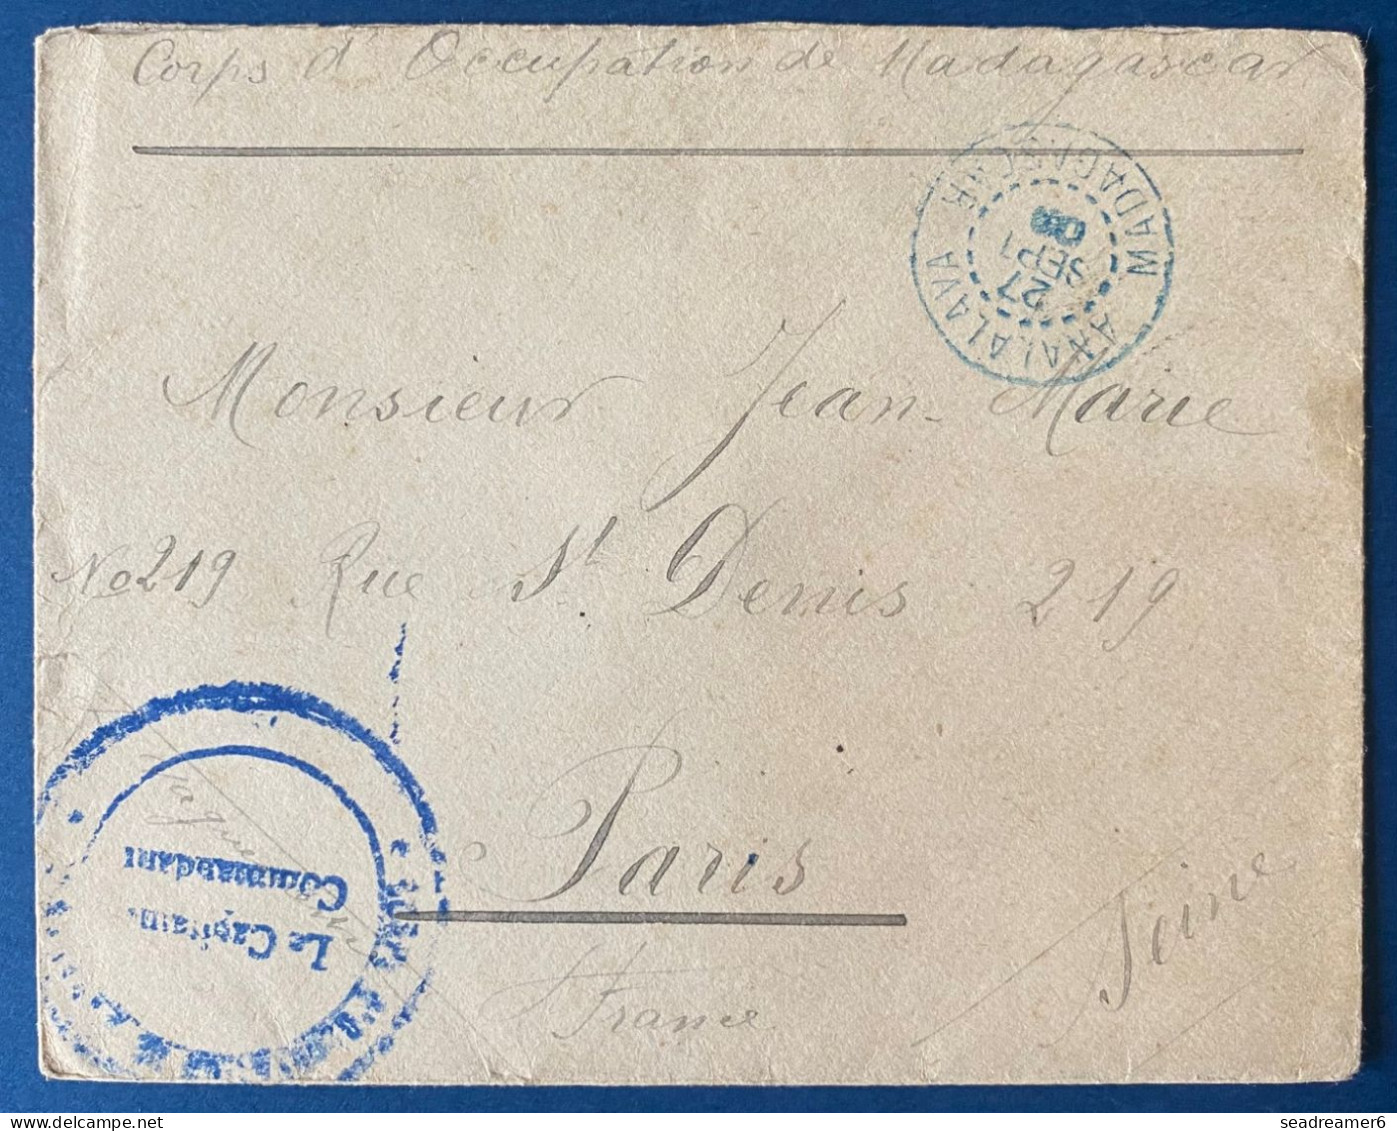 France Colonies Lettre Corps Expeditionnaire De Madagascar Dateur Bleu D'ANALALAVA De 1903 Pour PARIS, Au Dos Transit - Lettres & Documents